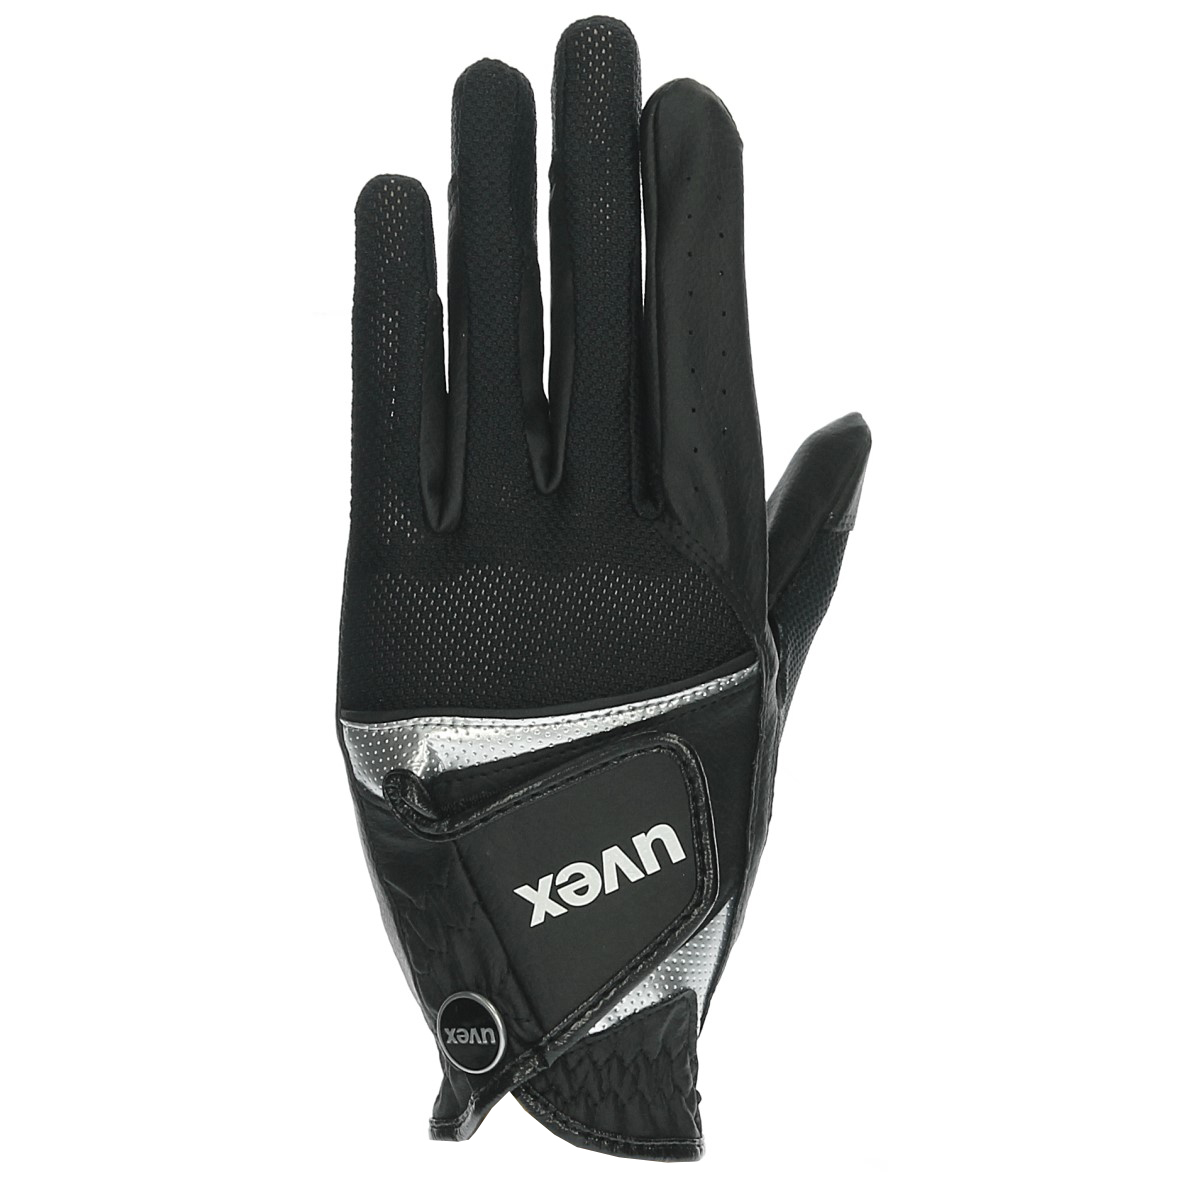 Handschoenen Uvex Sumair, 7?in zwart/zilver